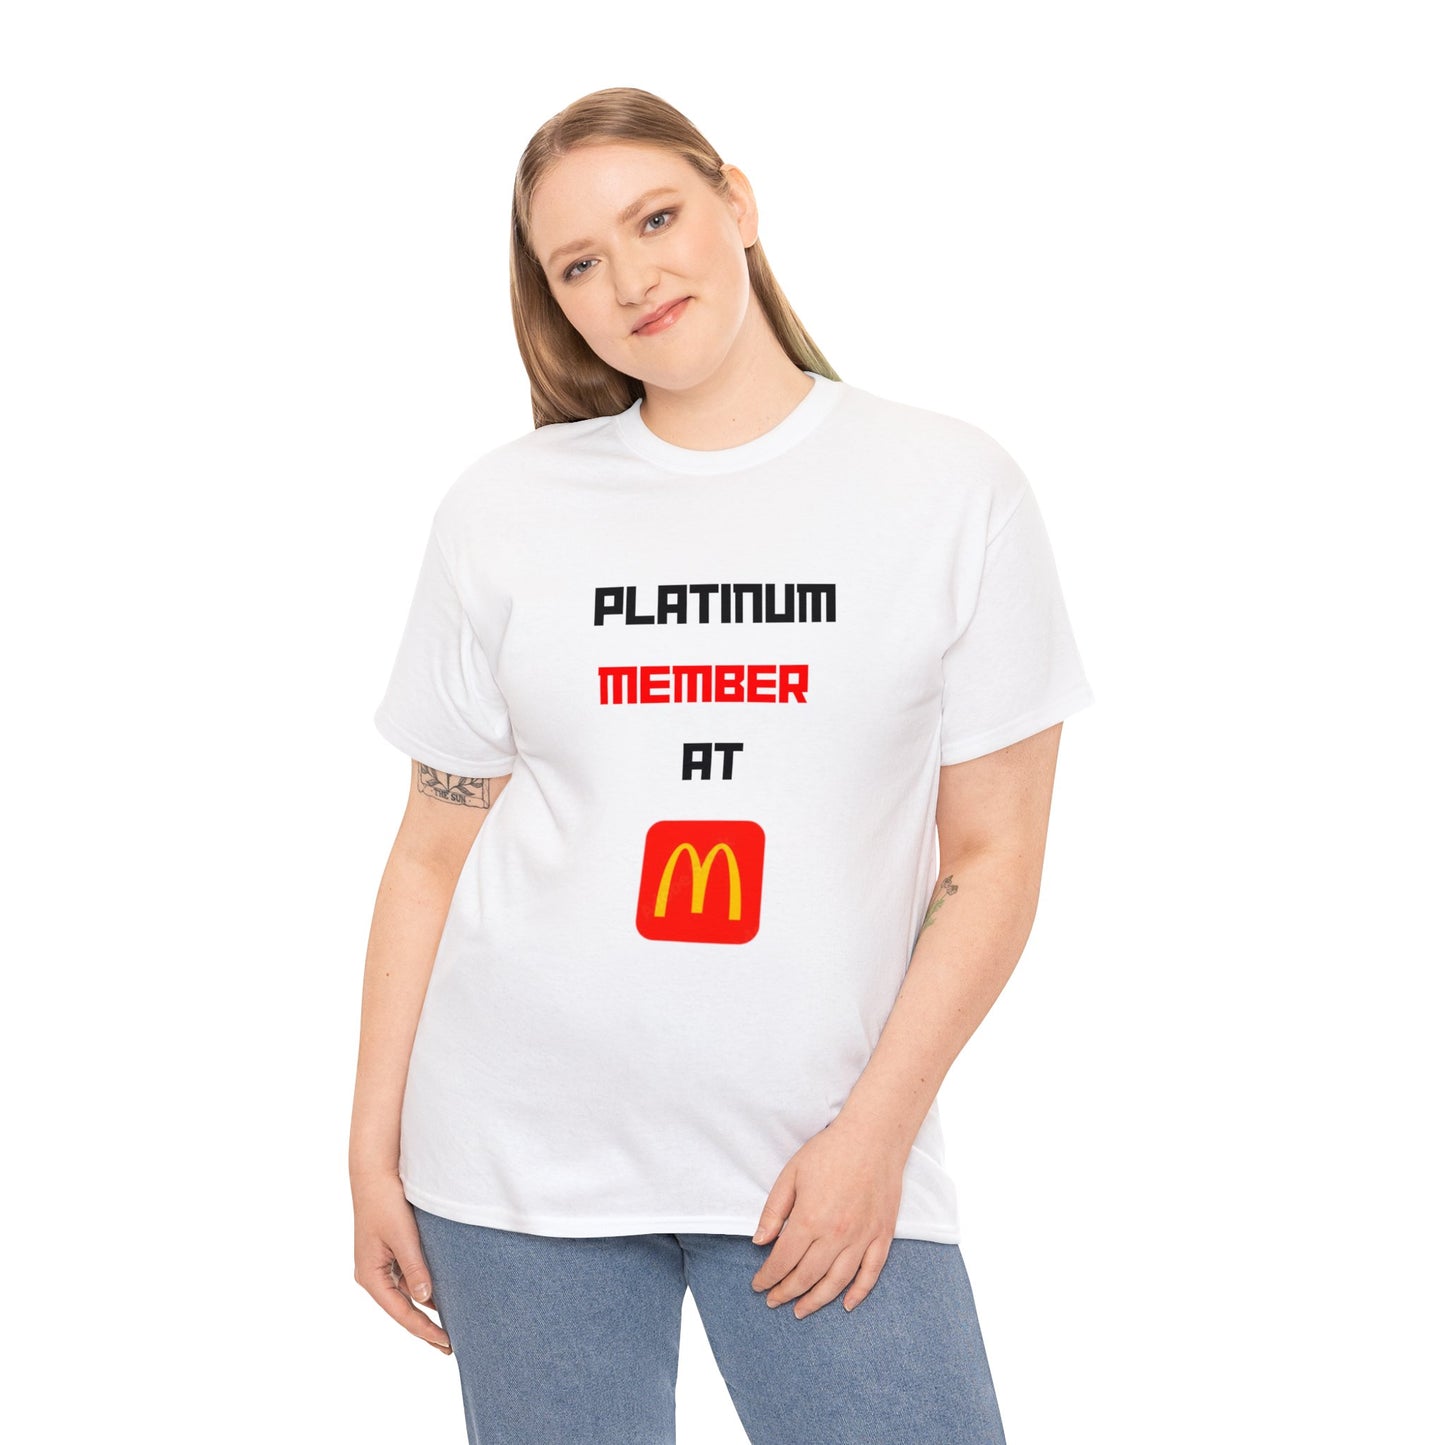 McDonalds MEMBER